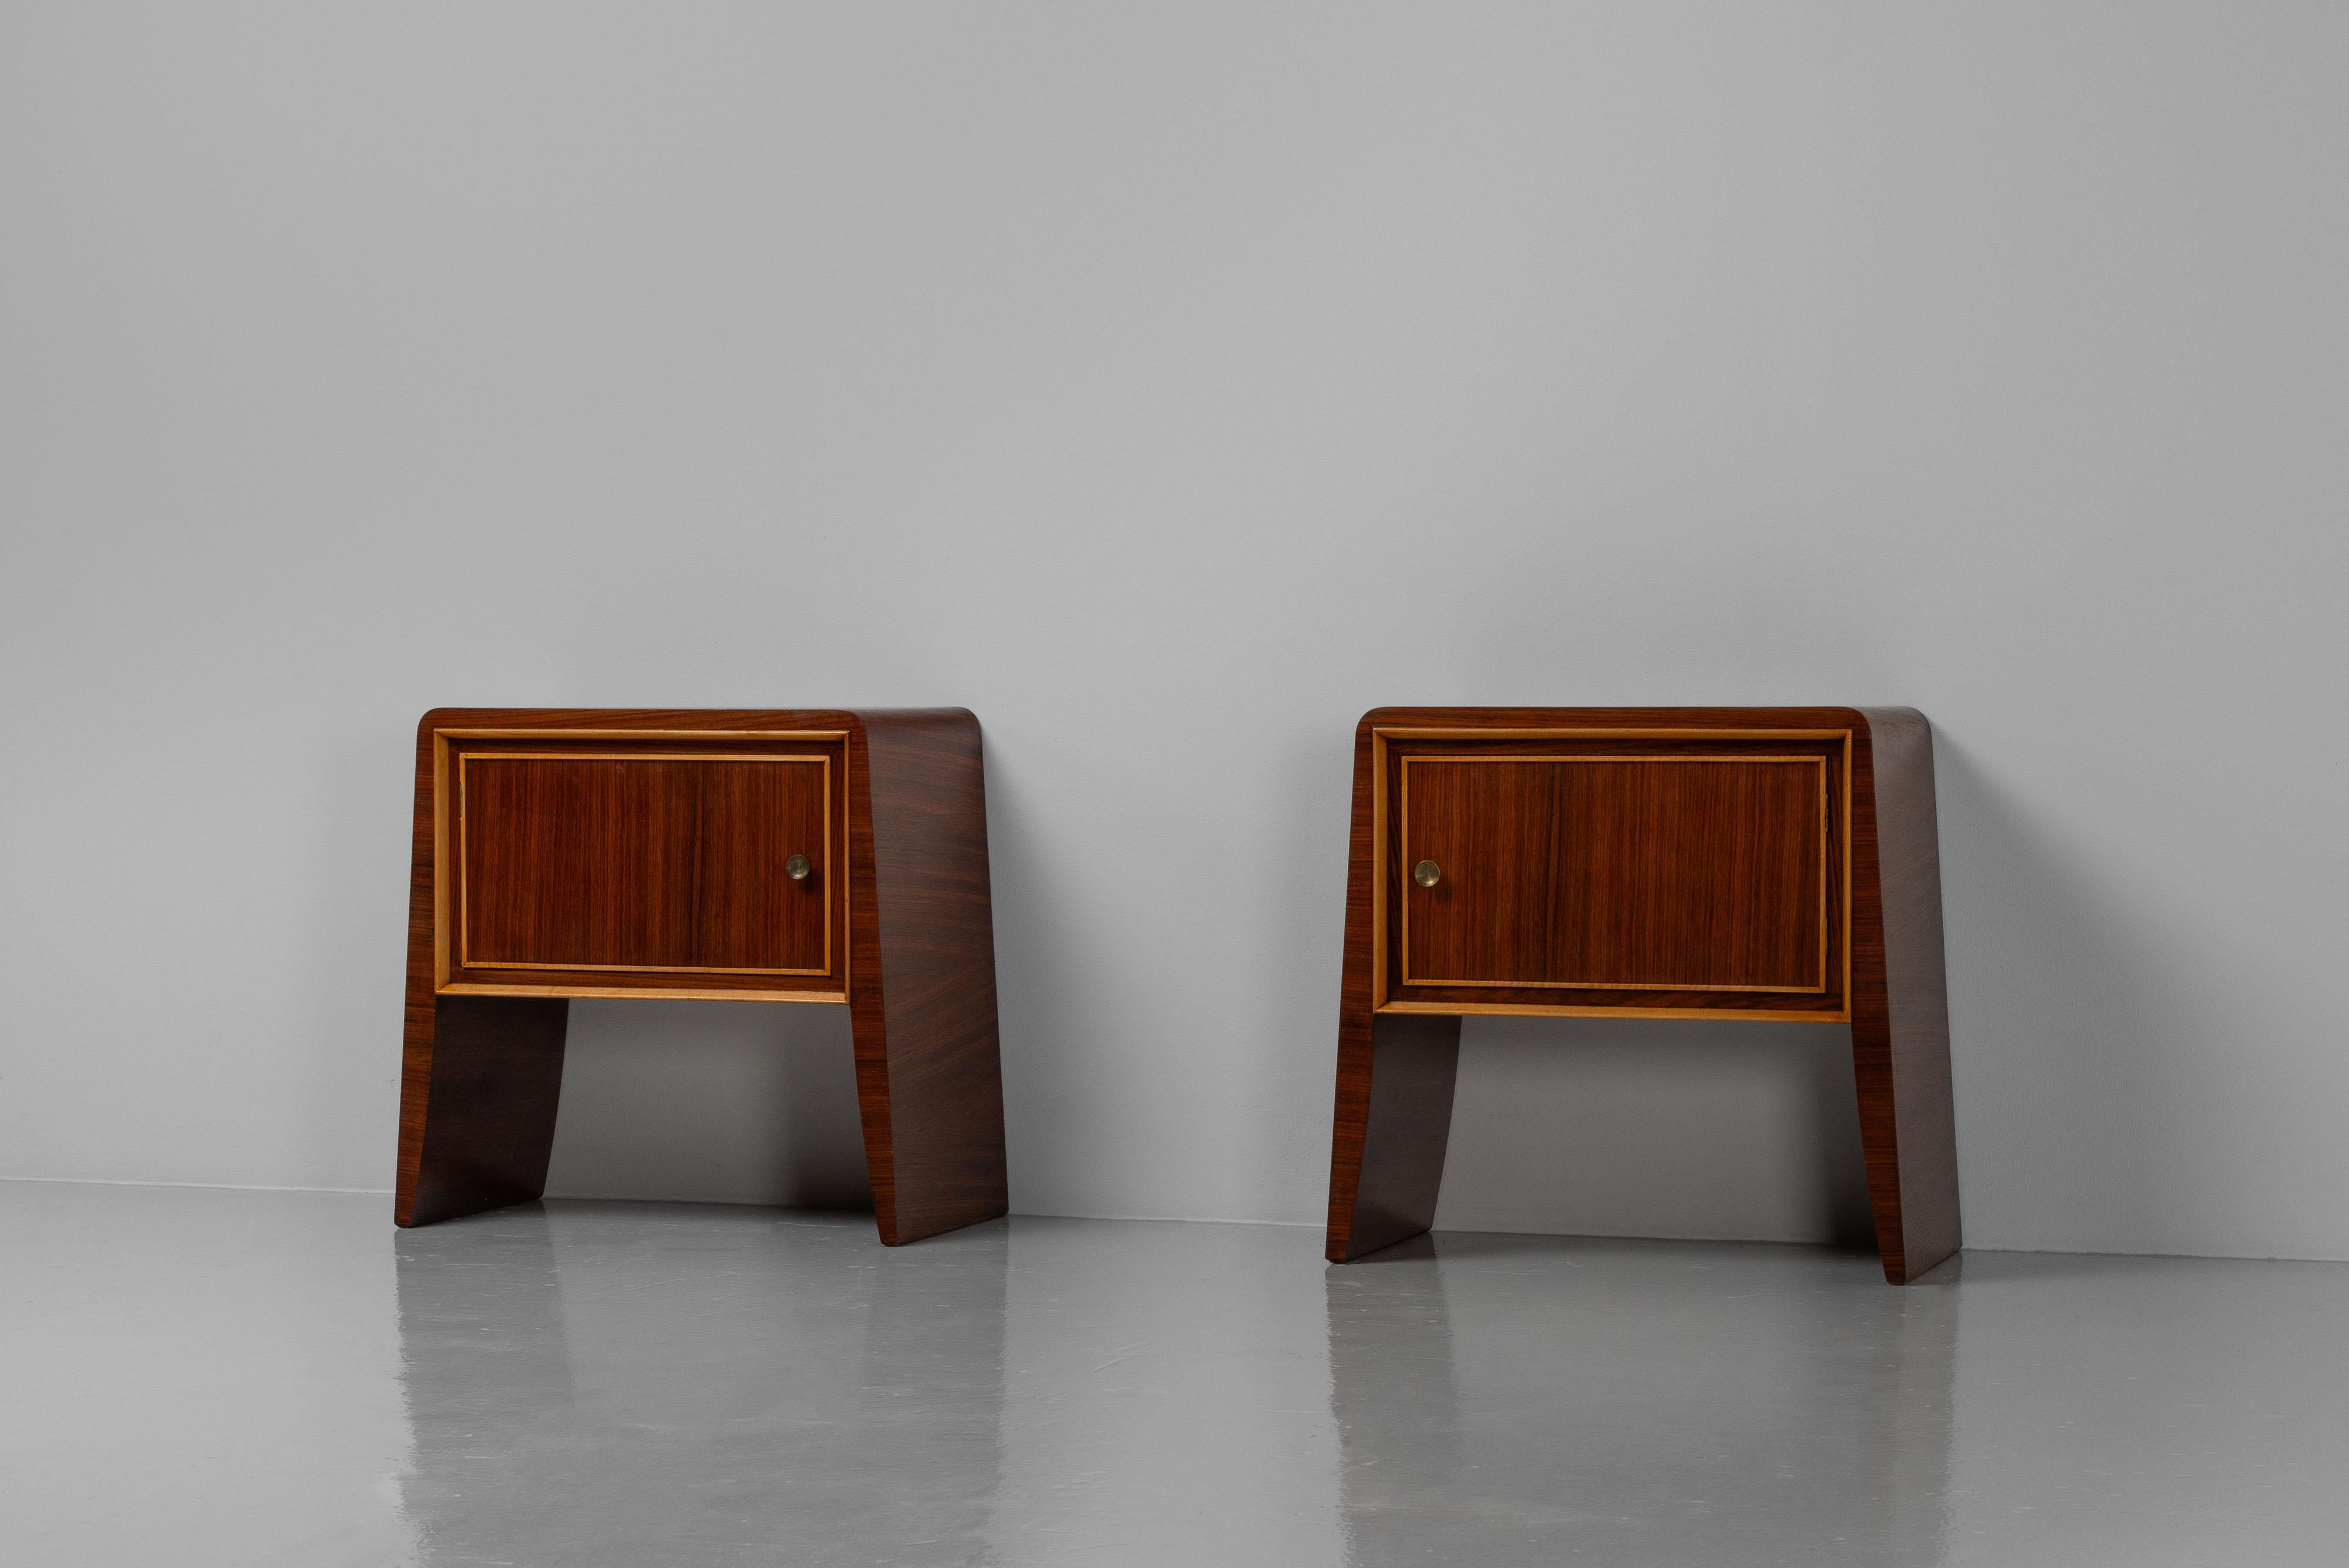 Remarquable paire d'armoires de chevet conçues par Paolo Buffa et fabriquées par un fabricant inconnu en Italie dans les années 1950. Fabriqué en beau bois de rose, avec des lattes de hêtre contrastées sur les panneaux de porte. Le bois foncé et les